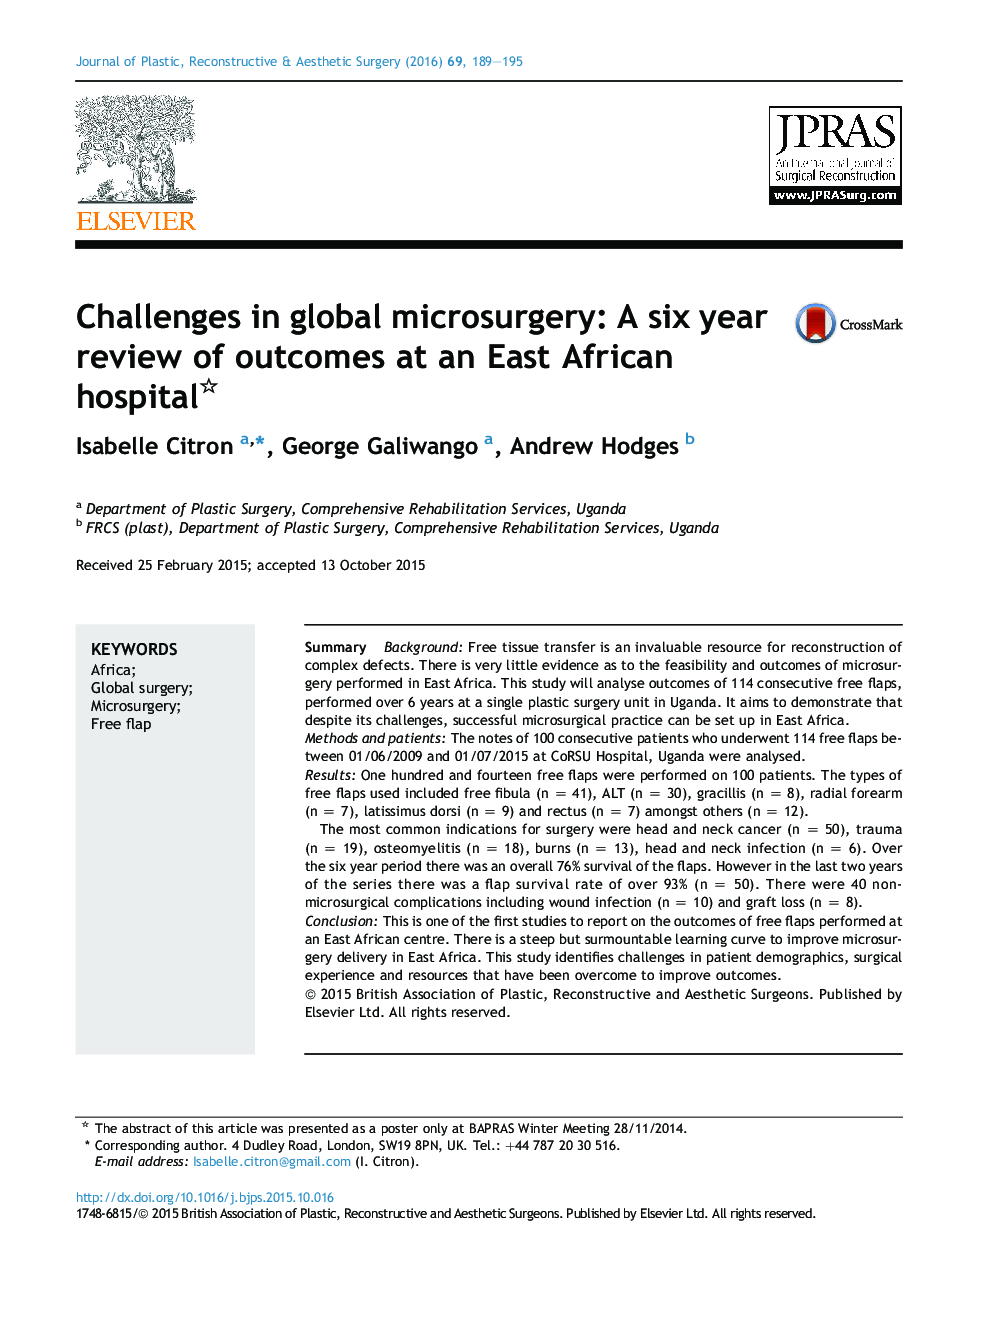 چالش های موجود در میکروسکوپ جهانی: یک بررسی شش ساله از نتایج در یک بیمارستان شرق آفریقا 